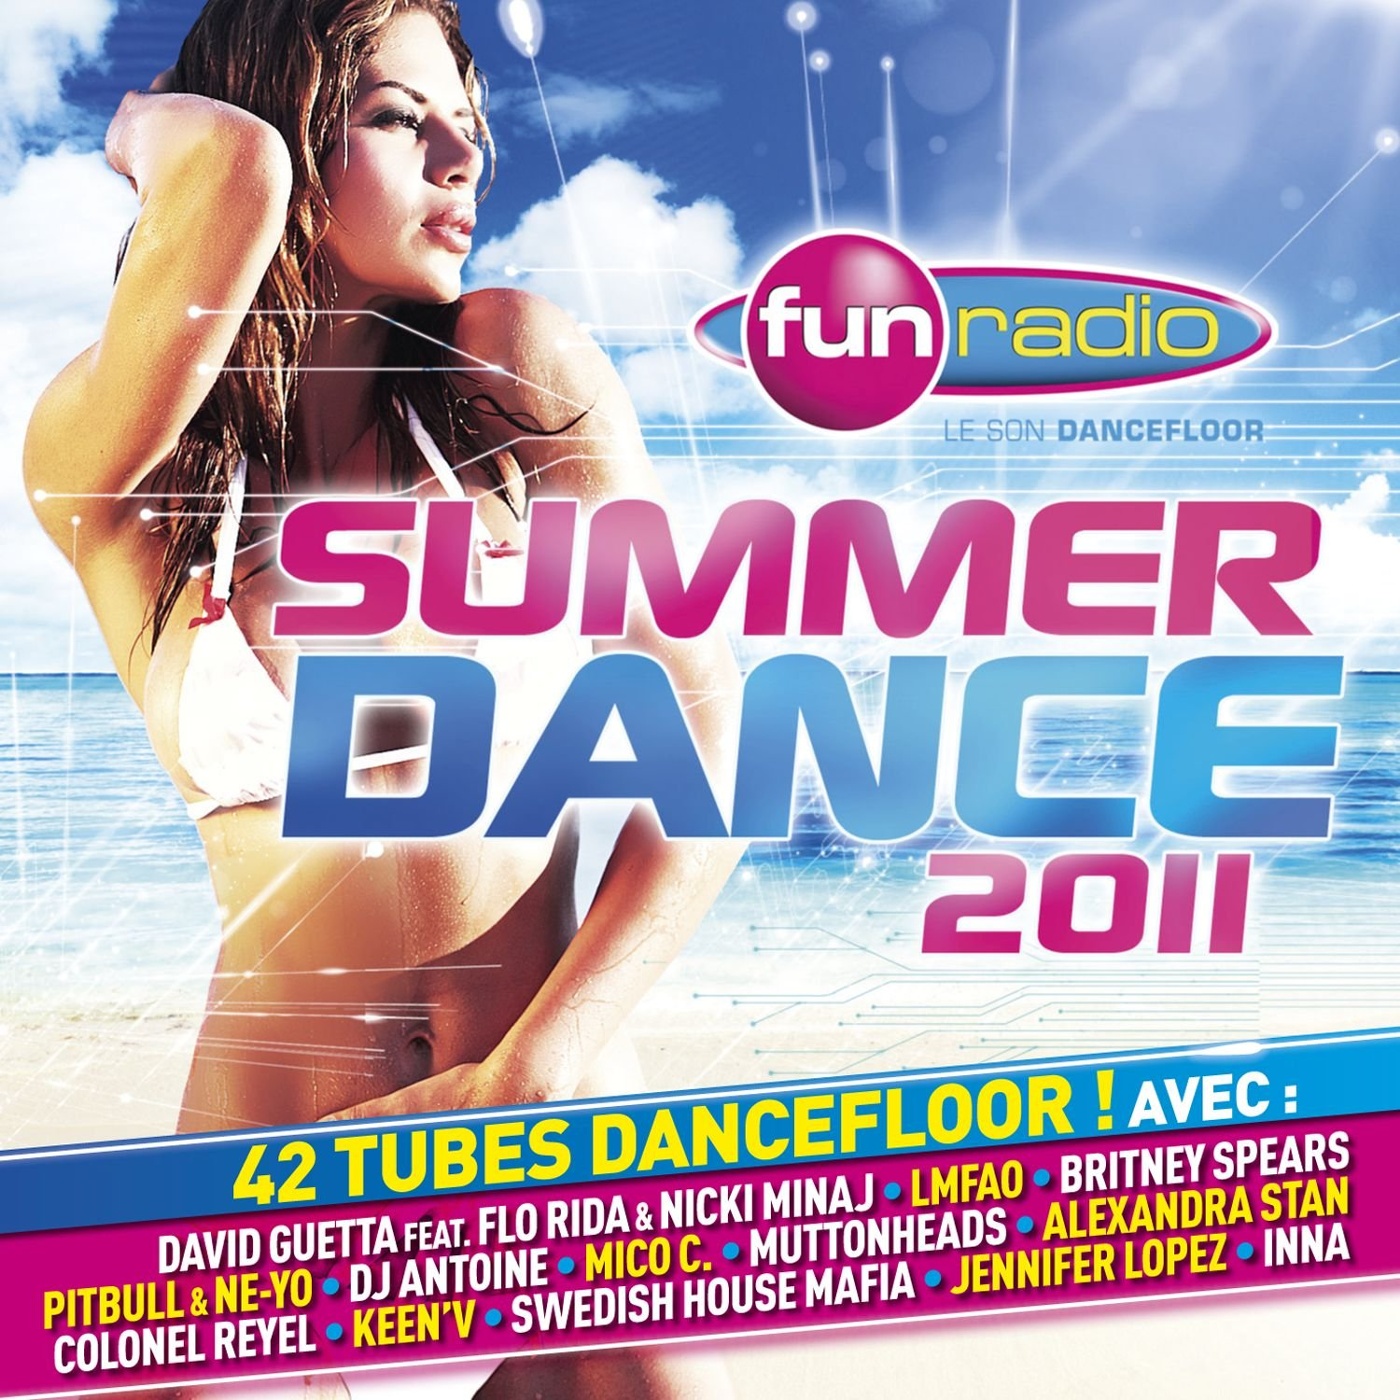 Summer dance remix. Танец 2011 года. Сборники 2011 года. Dance 2011 сборник. Саммер дэнс.